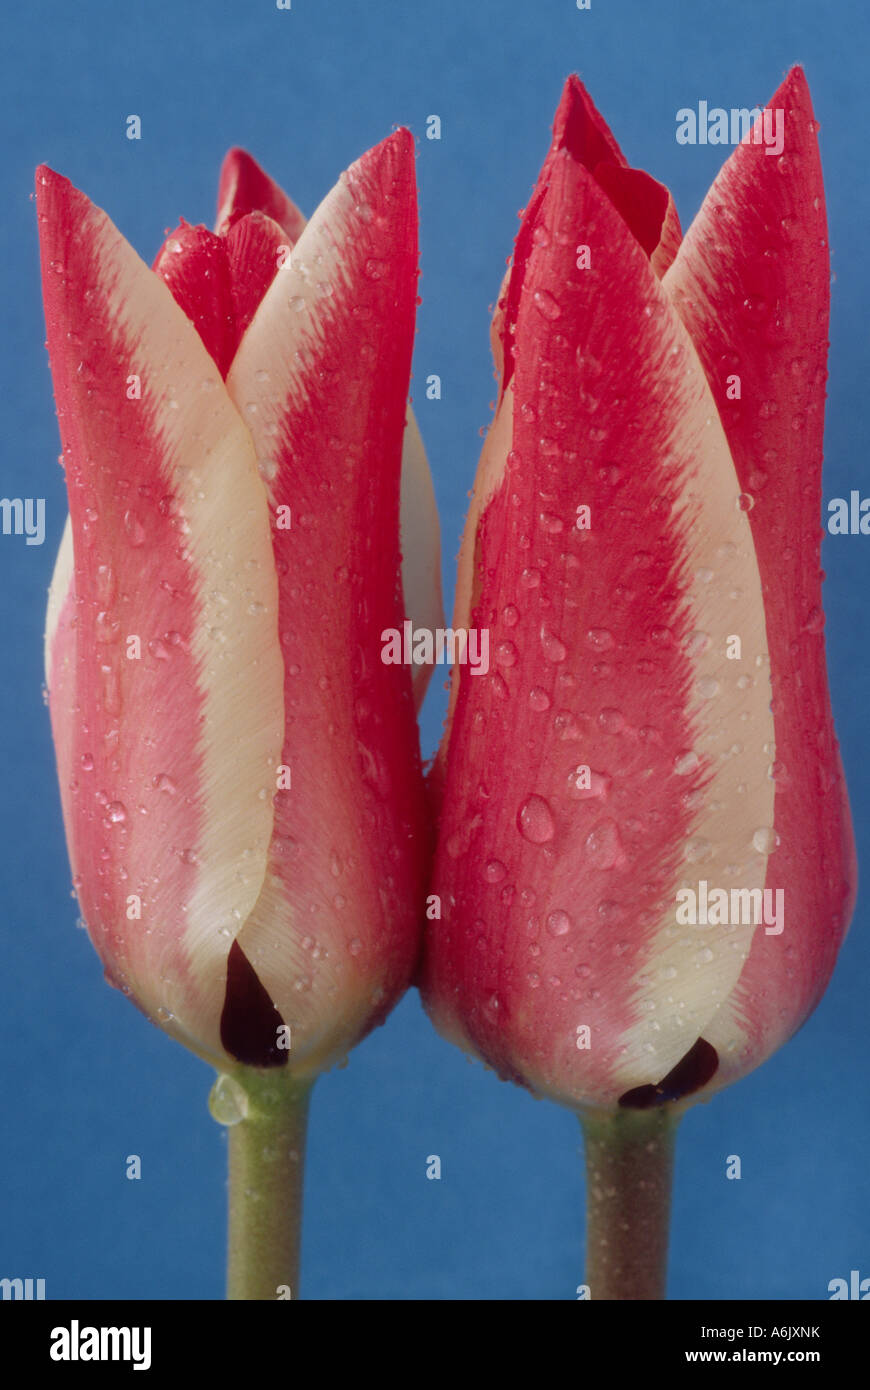 Tulipa "Pinocchio" (Tulip) DIVISIONE 14 quattordici Greigii gruppo. In prossimità dei due bianco orlato di rosso tulipano. Foto Stock